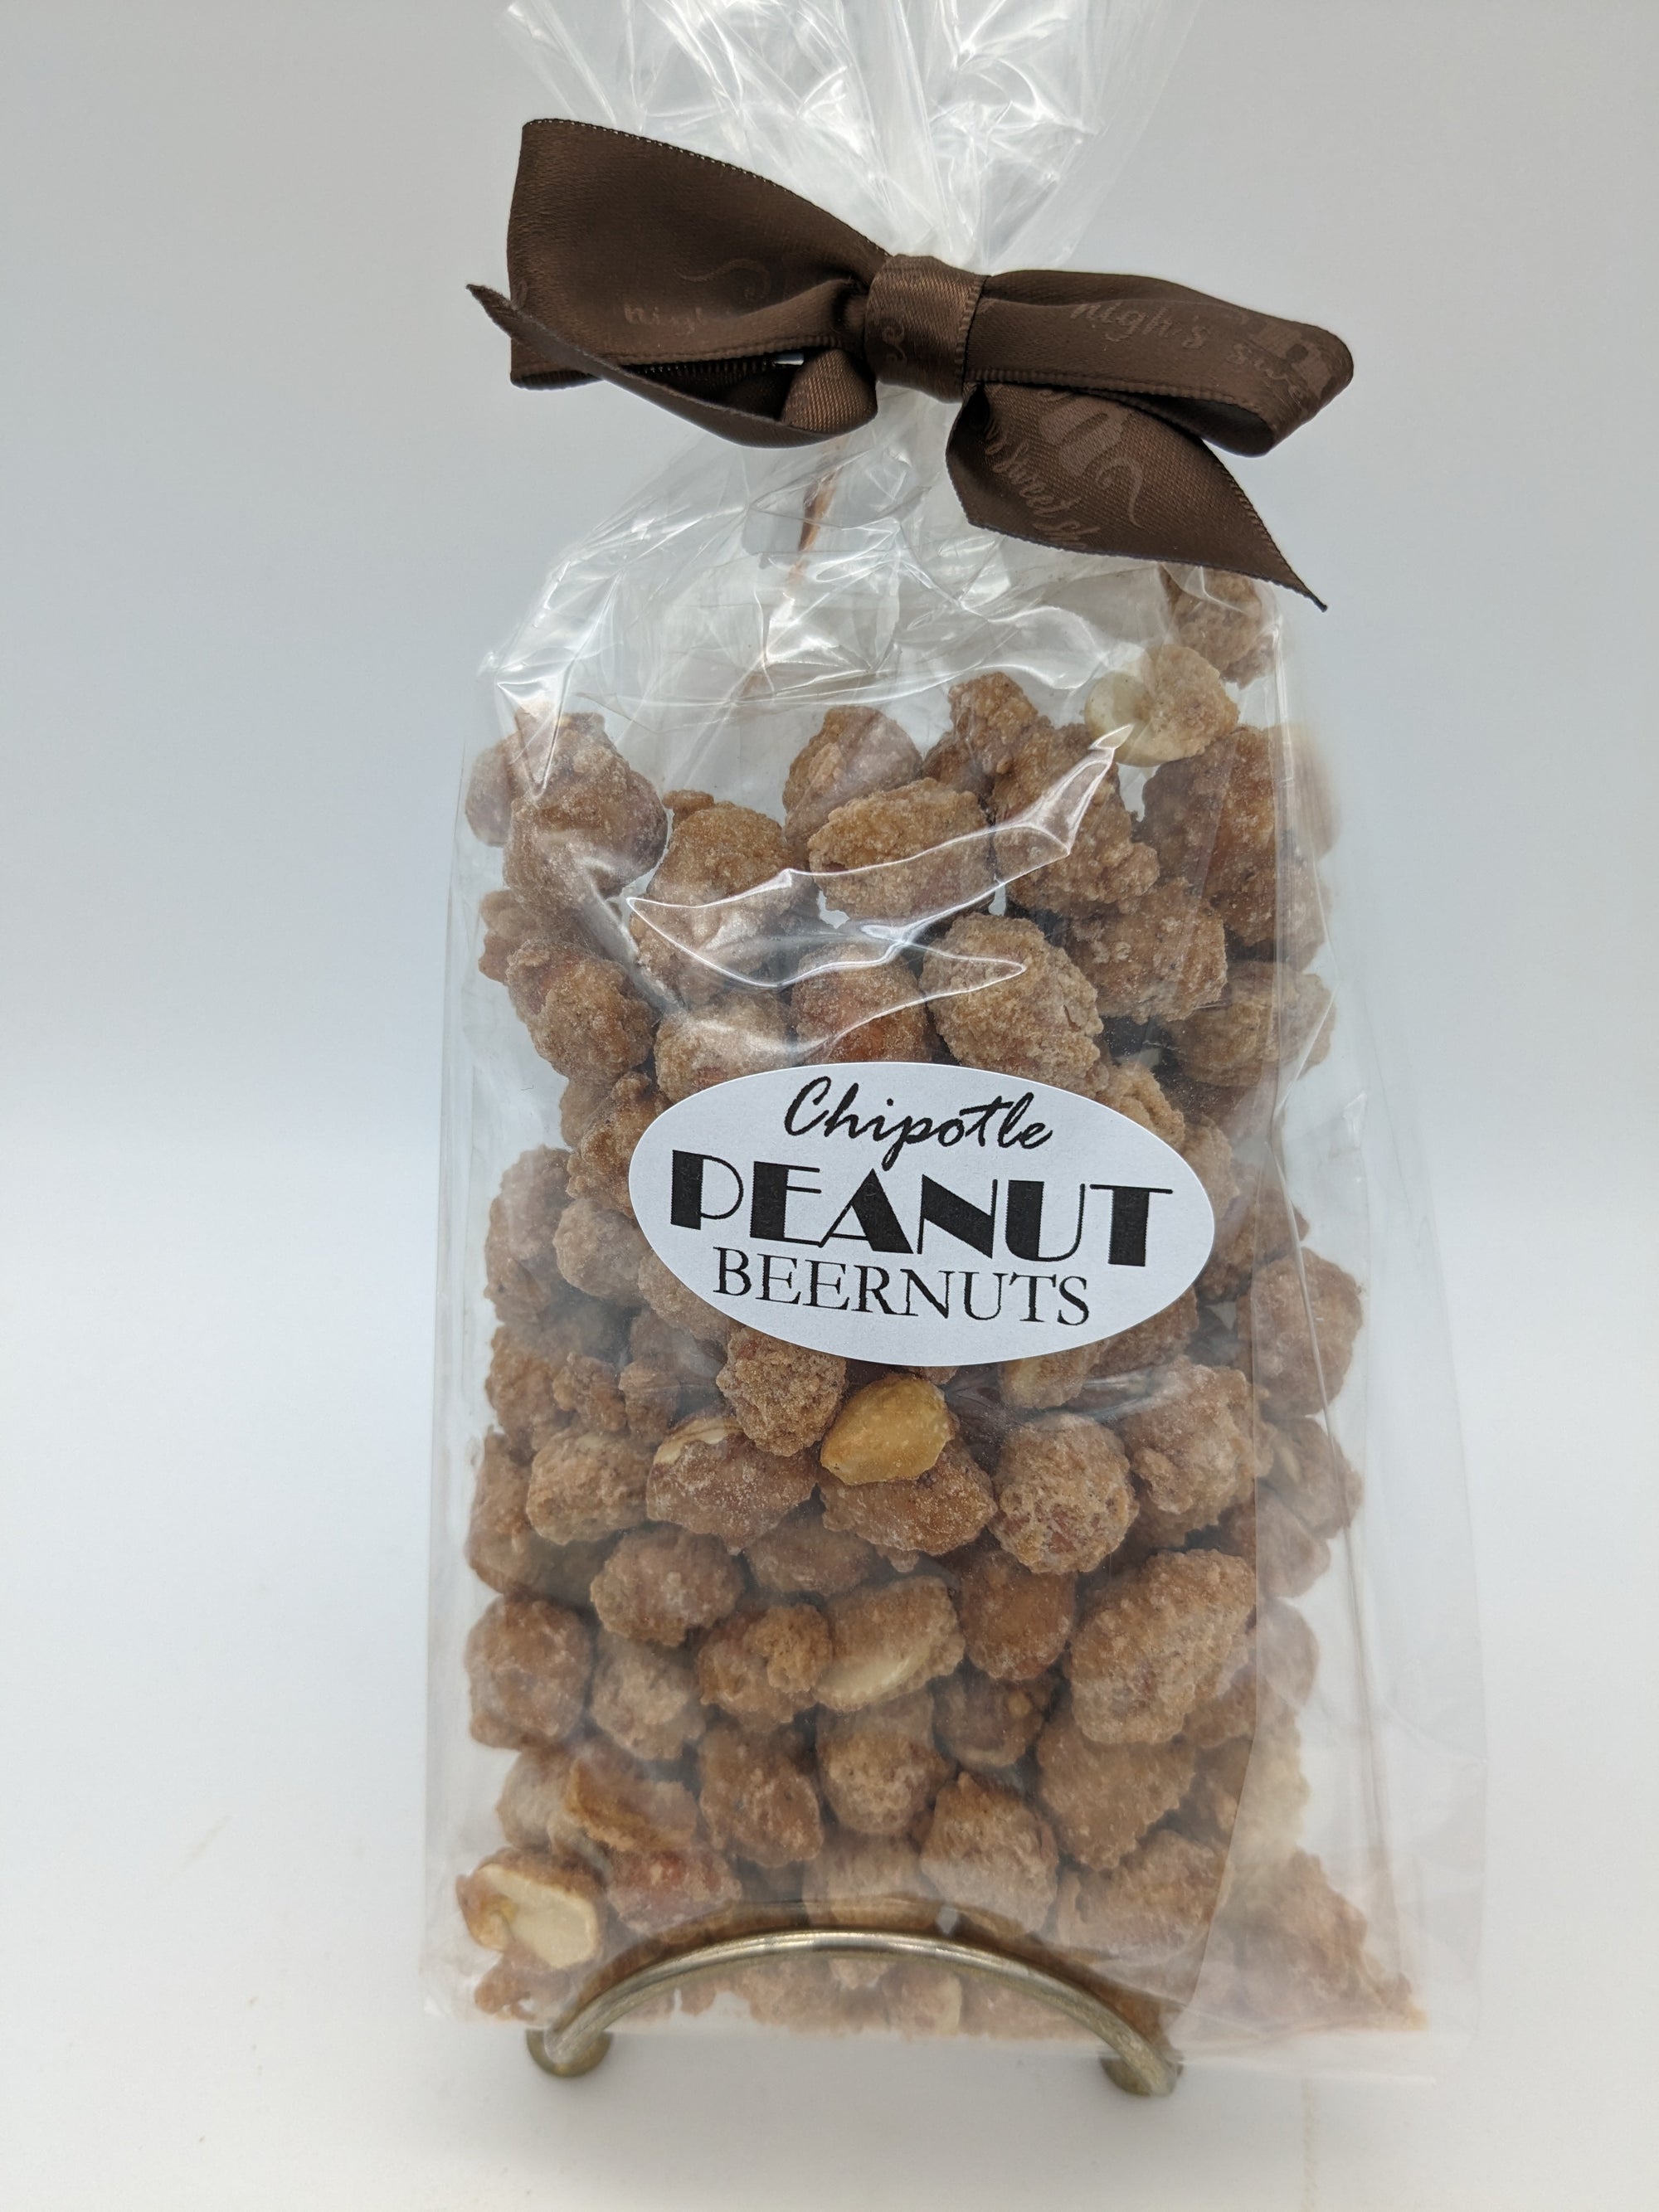 Chipotle Peanut Beernuts